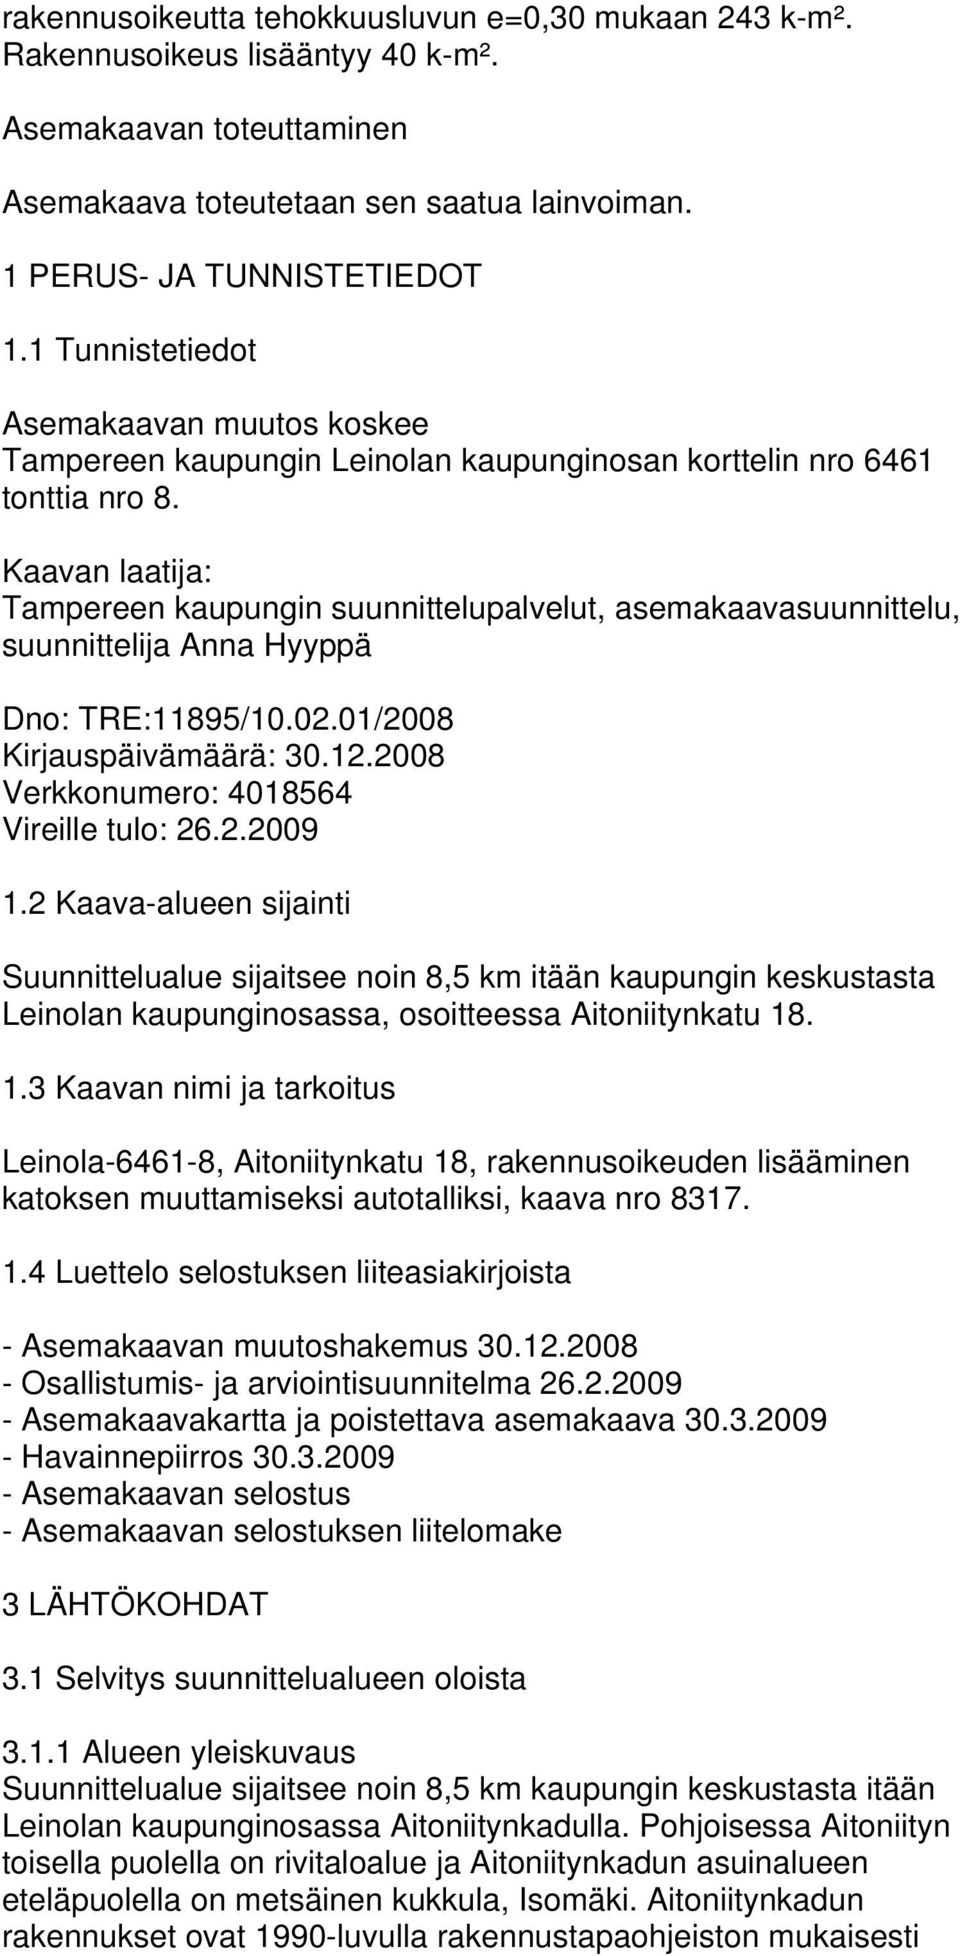 Kaavan laatija: Tampereen kaupungin suunnittelupalvelut, asemakaavasuunnittelu, suunnittelija Anna Hyyppä Dno: TRE:11895/10.02.01/2008 Kirjauspäivämäärä: 30.12.